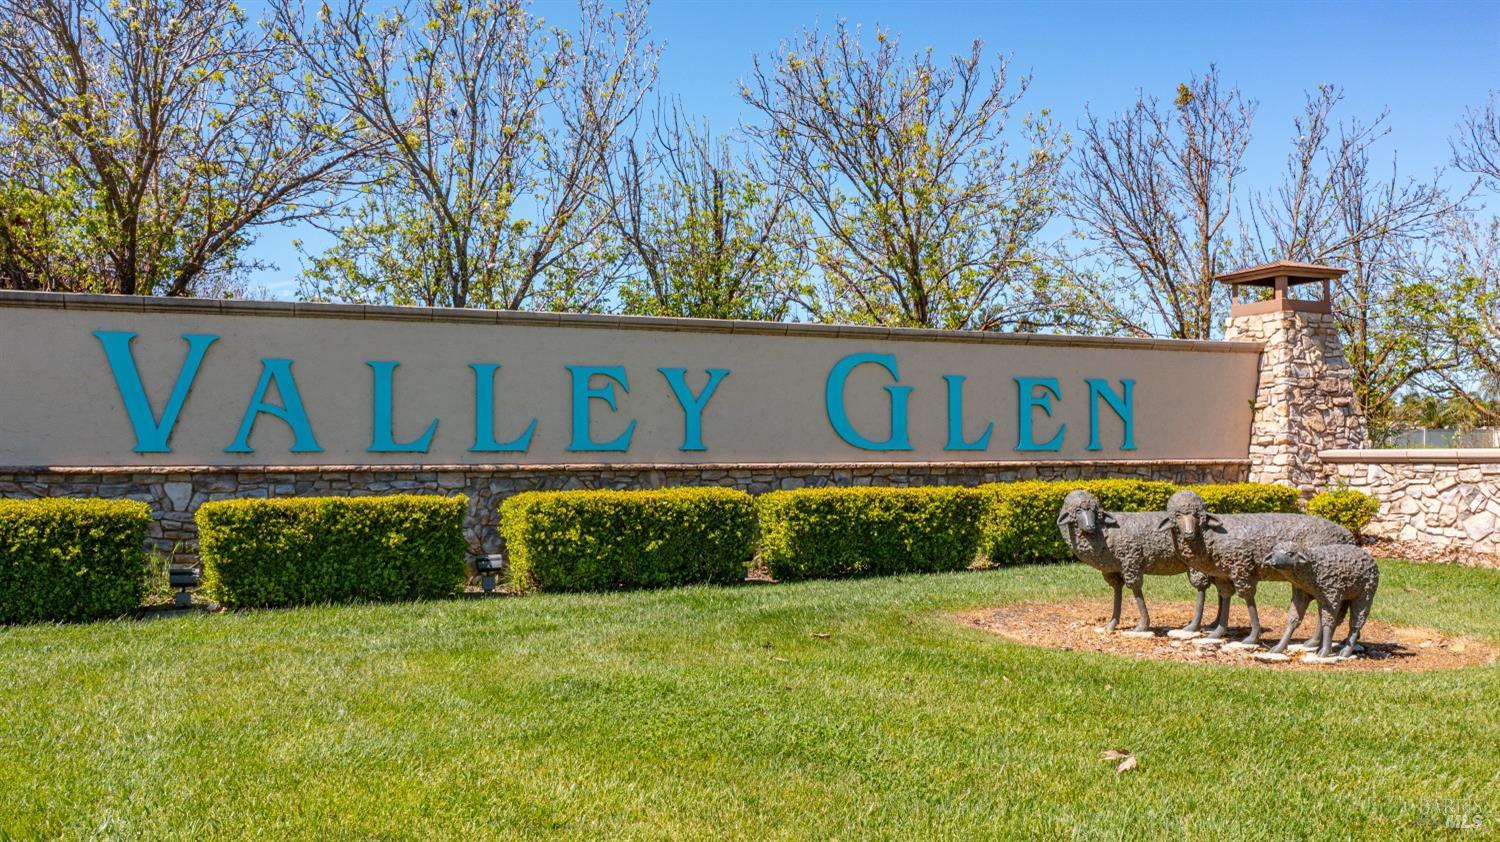 Photo of 0 Valley Glen Dr in Dixon, CA